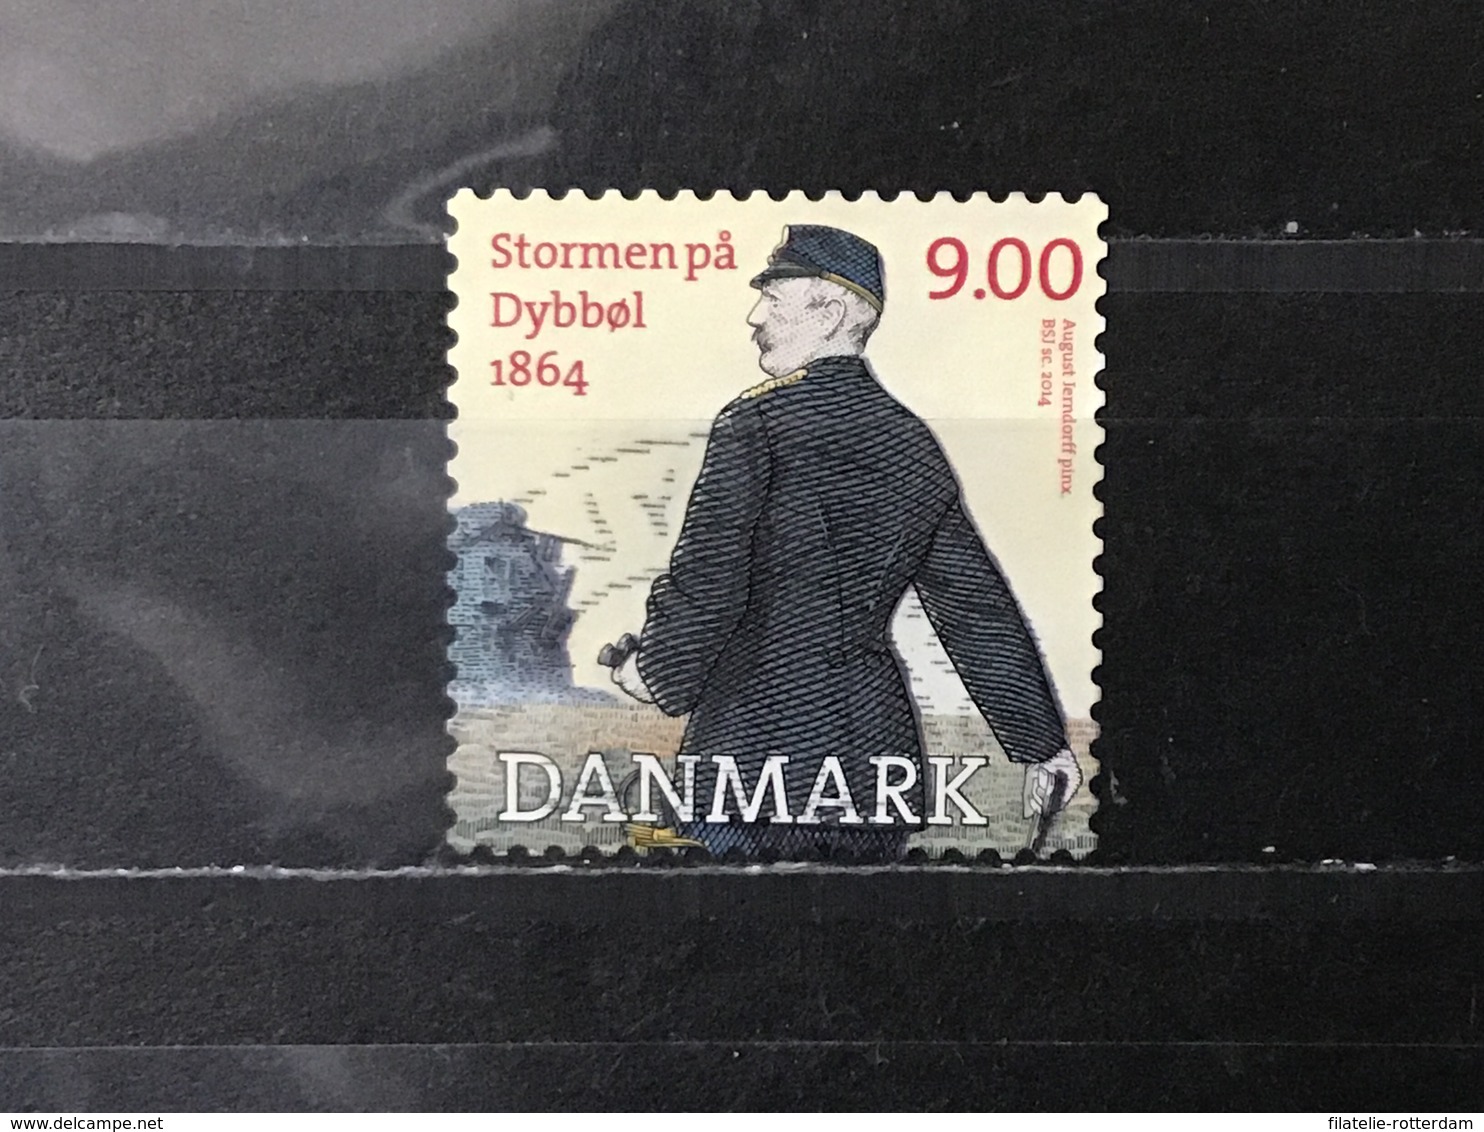 Denemarken / Denmark - Oorlog Van Dybbol (9) 2014 - Gebruikt